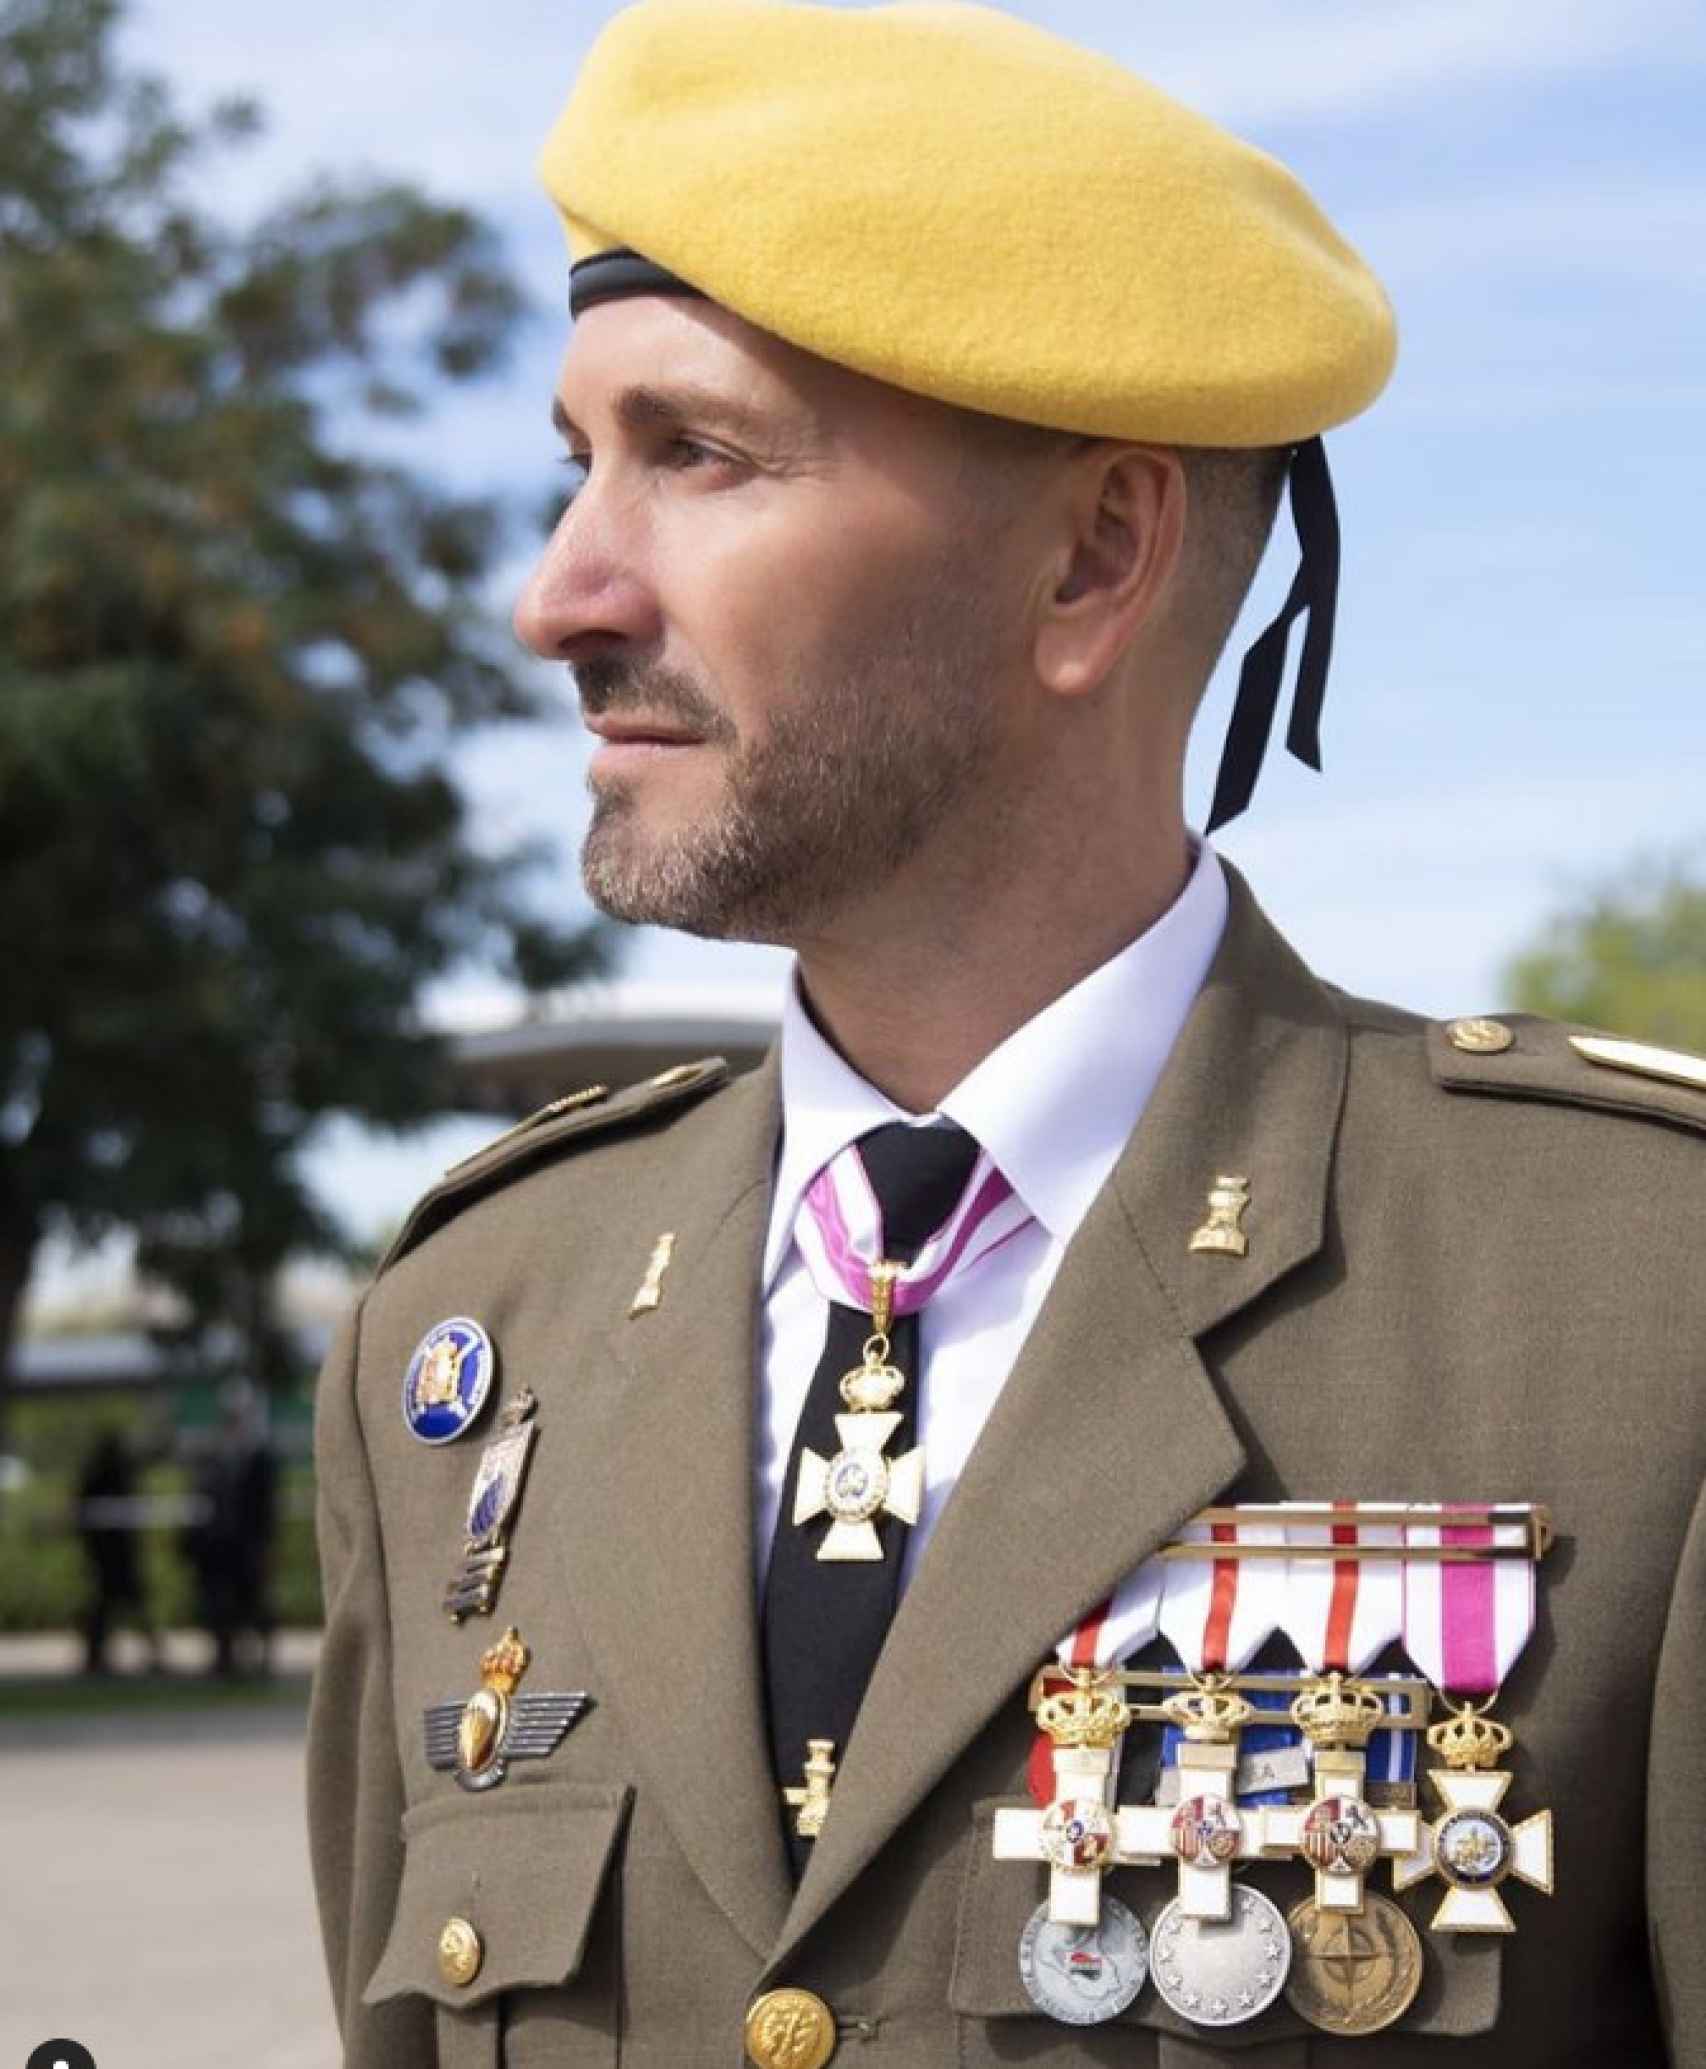 El militar vestido con su uniforme de gala.